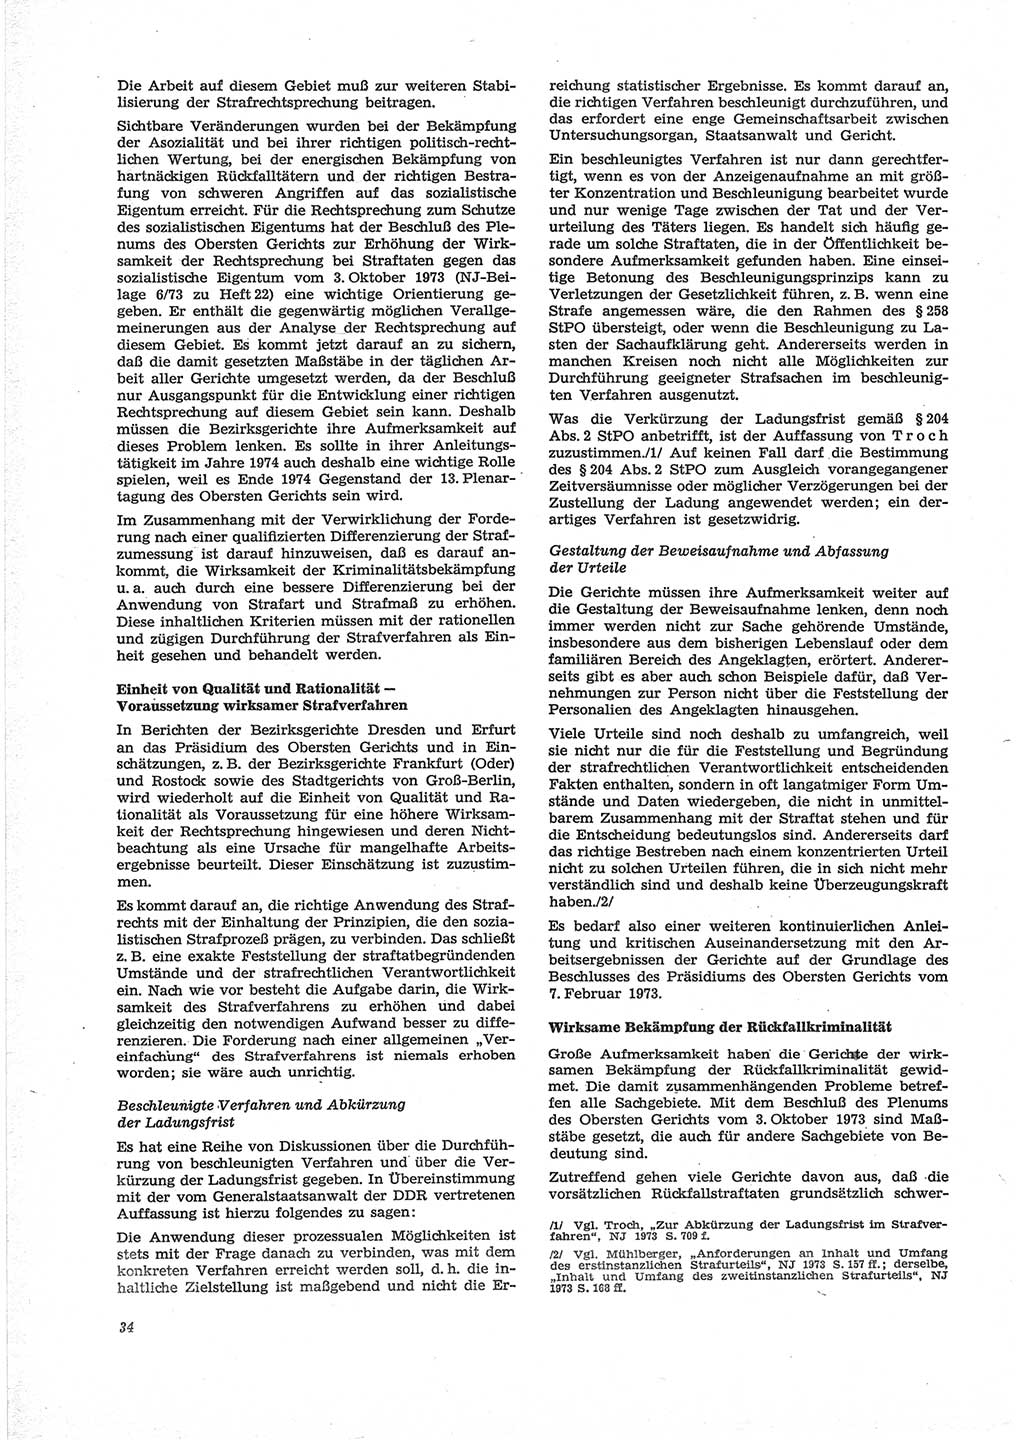 Neue Justiz (NJ), Zeitschrift für Recht und Rechtswissenschaft [Deutsche Demokratische Republik (DDR)], 28. Jahrgang 1974, Seite 34 (NJ DDR 1974, S. 34)